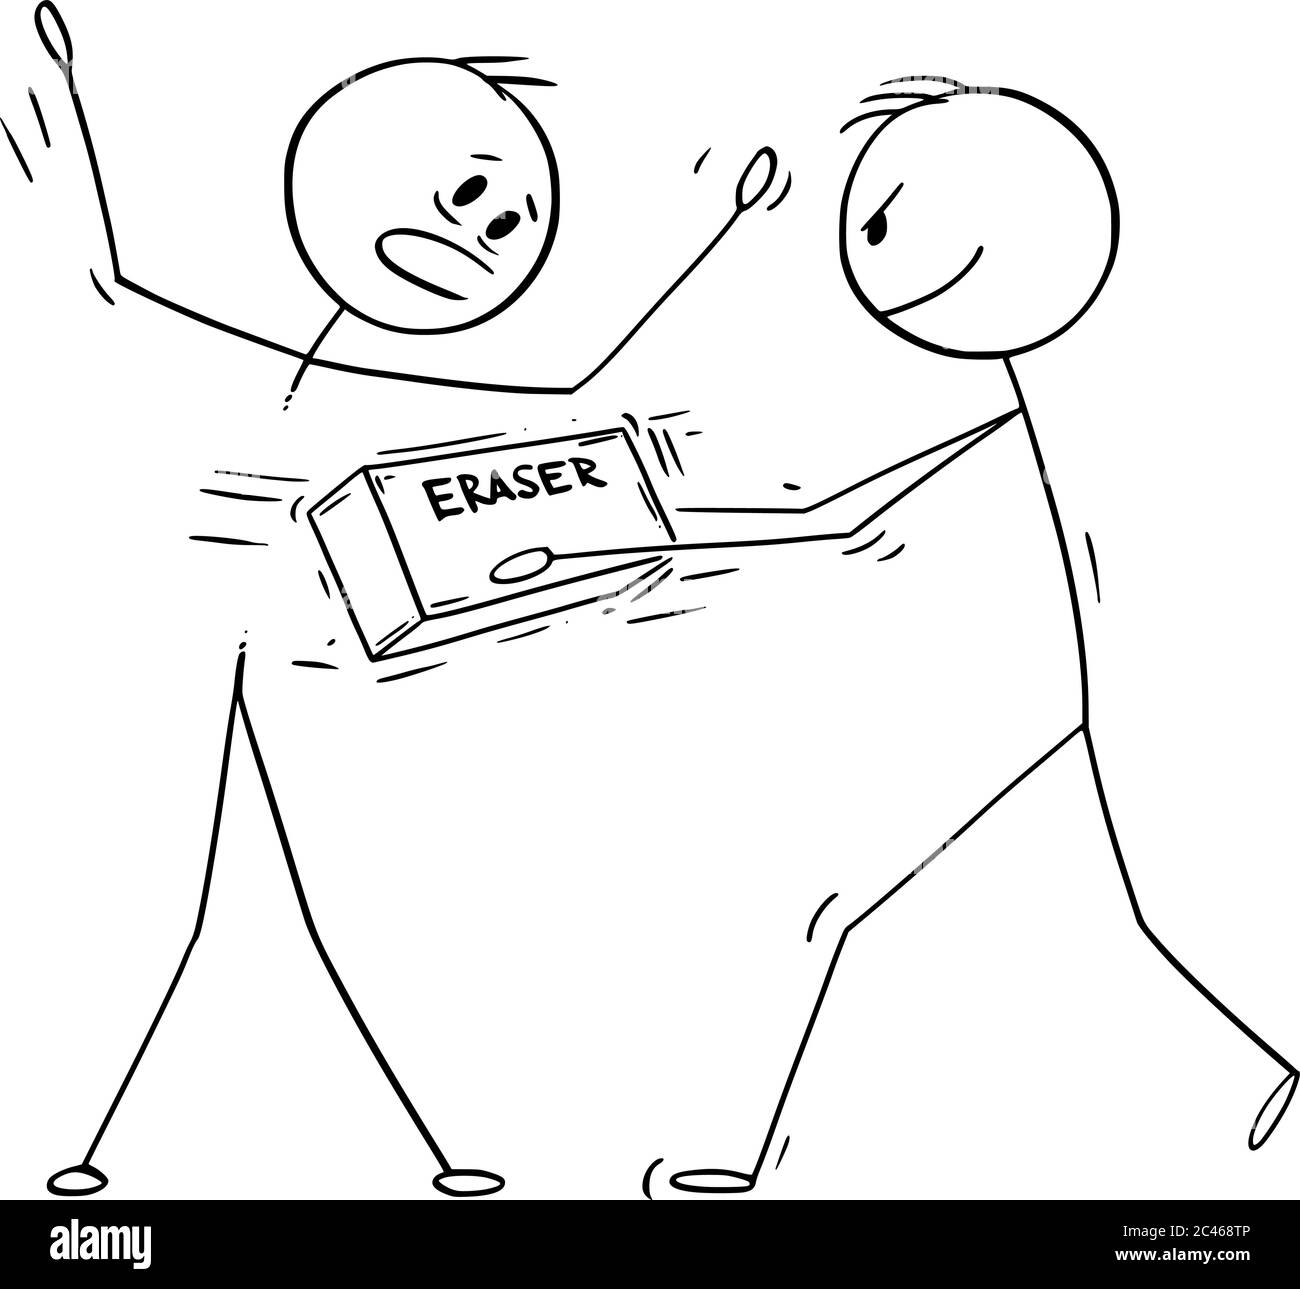 Vektor Cartoon Stick Figur Zeichnung konzeptionelle Illustration der gezeichnet Mann Radieren einen anderen Mann mit Radierer. Stock Vektor